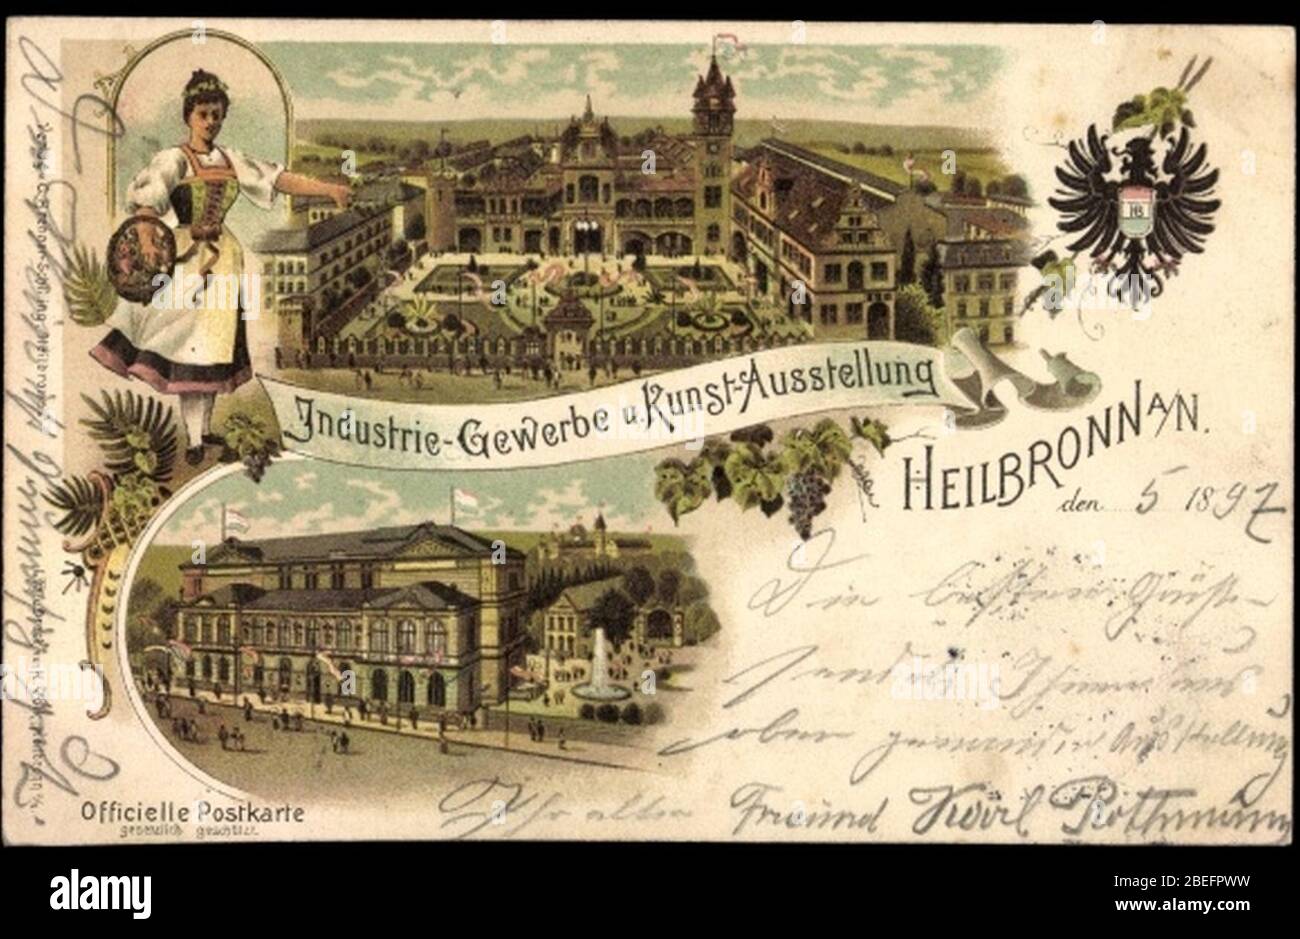 Heilbronn Gewerbeausstellung 1897. Stock Photo